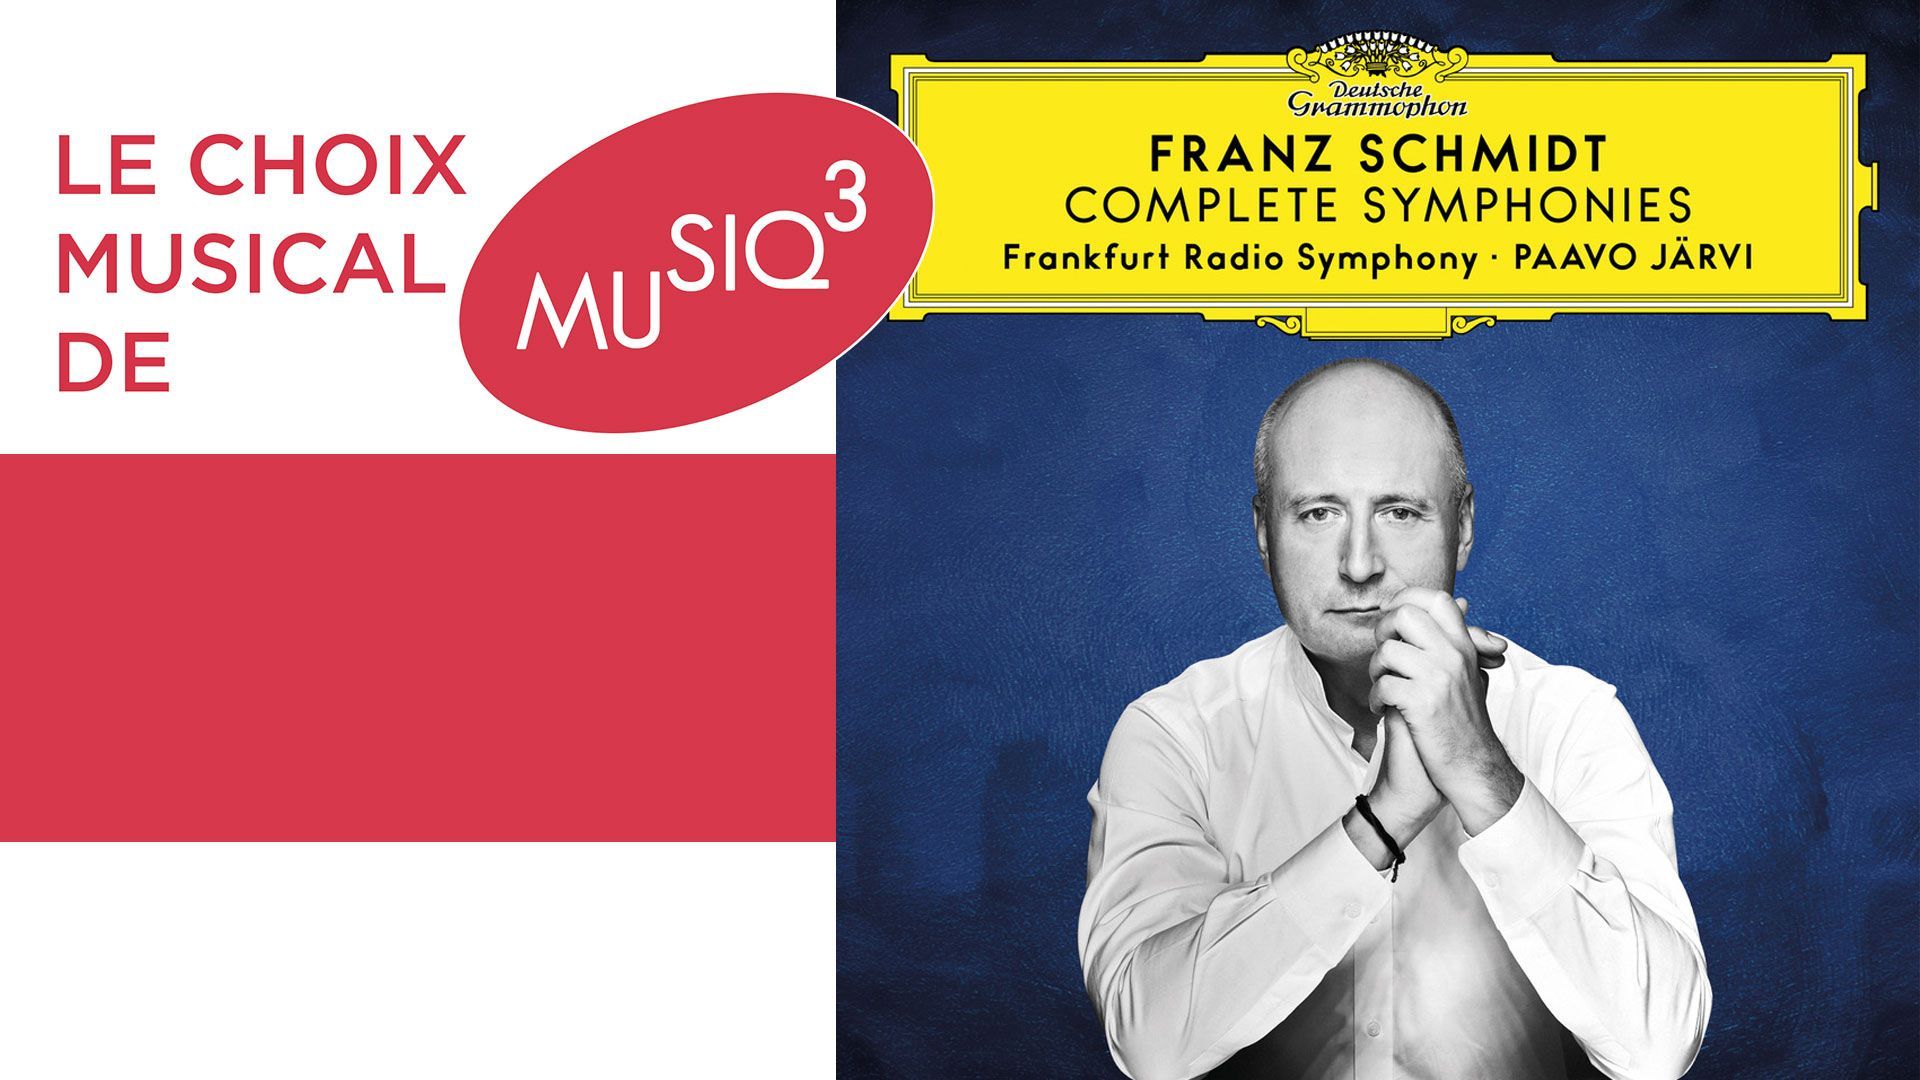 Découvrez les symphonies de Franz Schmidt grâce à Paavo Järvi